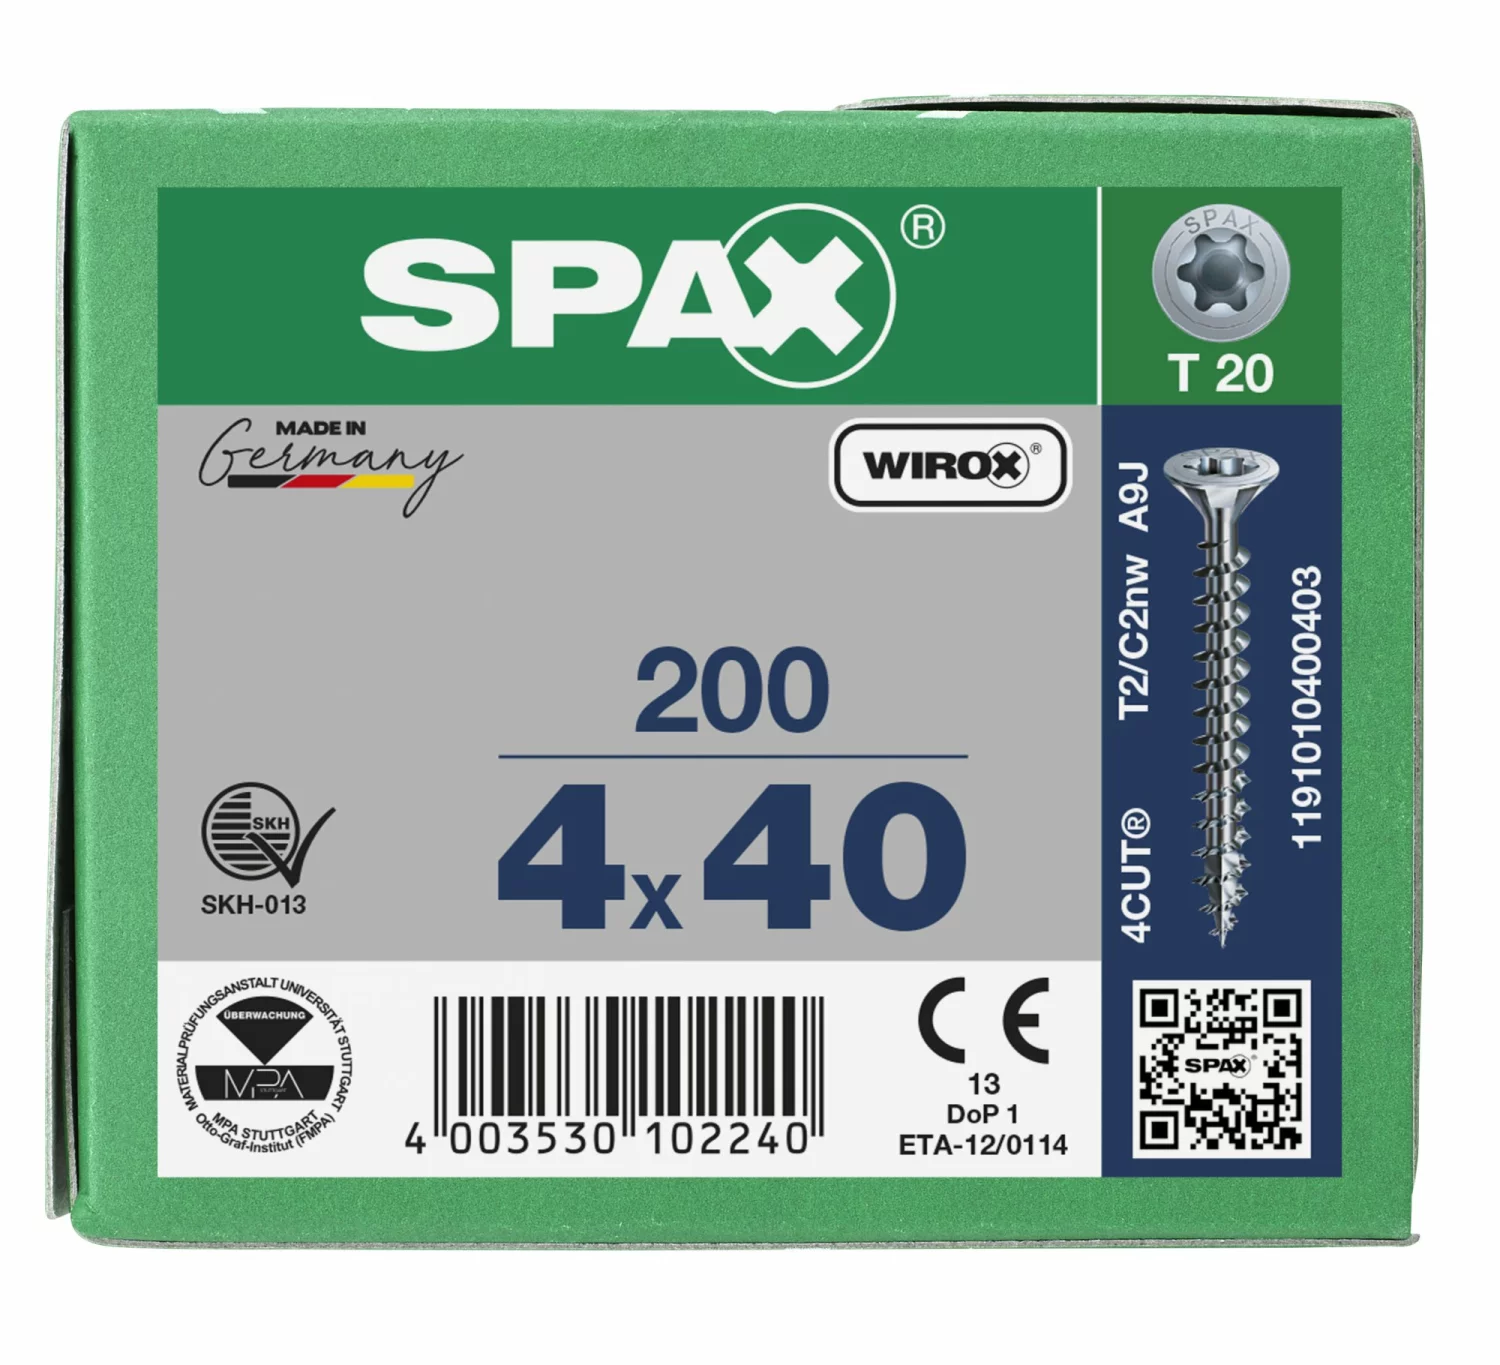 SPAX 1191010400403 Universele schroef, Verzonken kop, 4 x 40, Voldraad, T-STAR plus TX20 - WIROX - 200 stuks-image